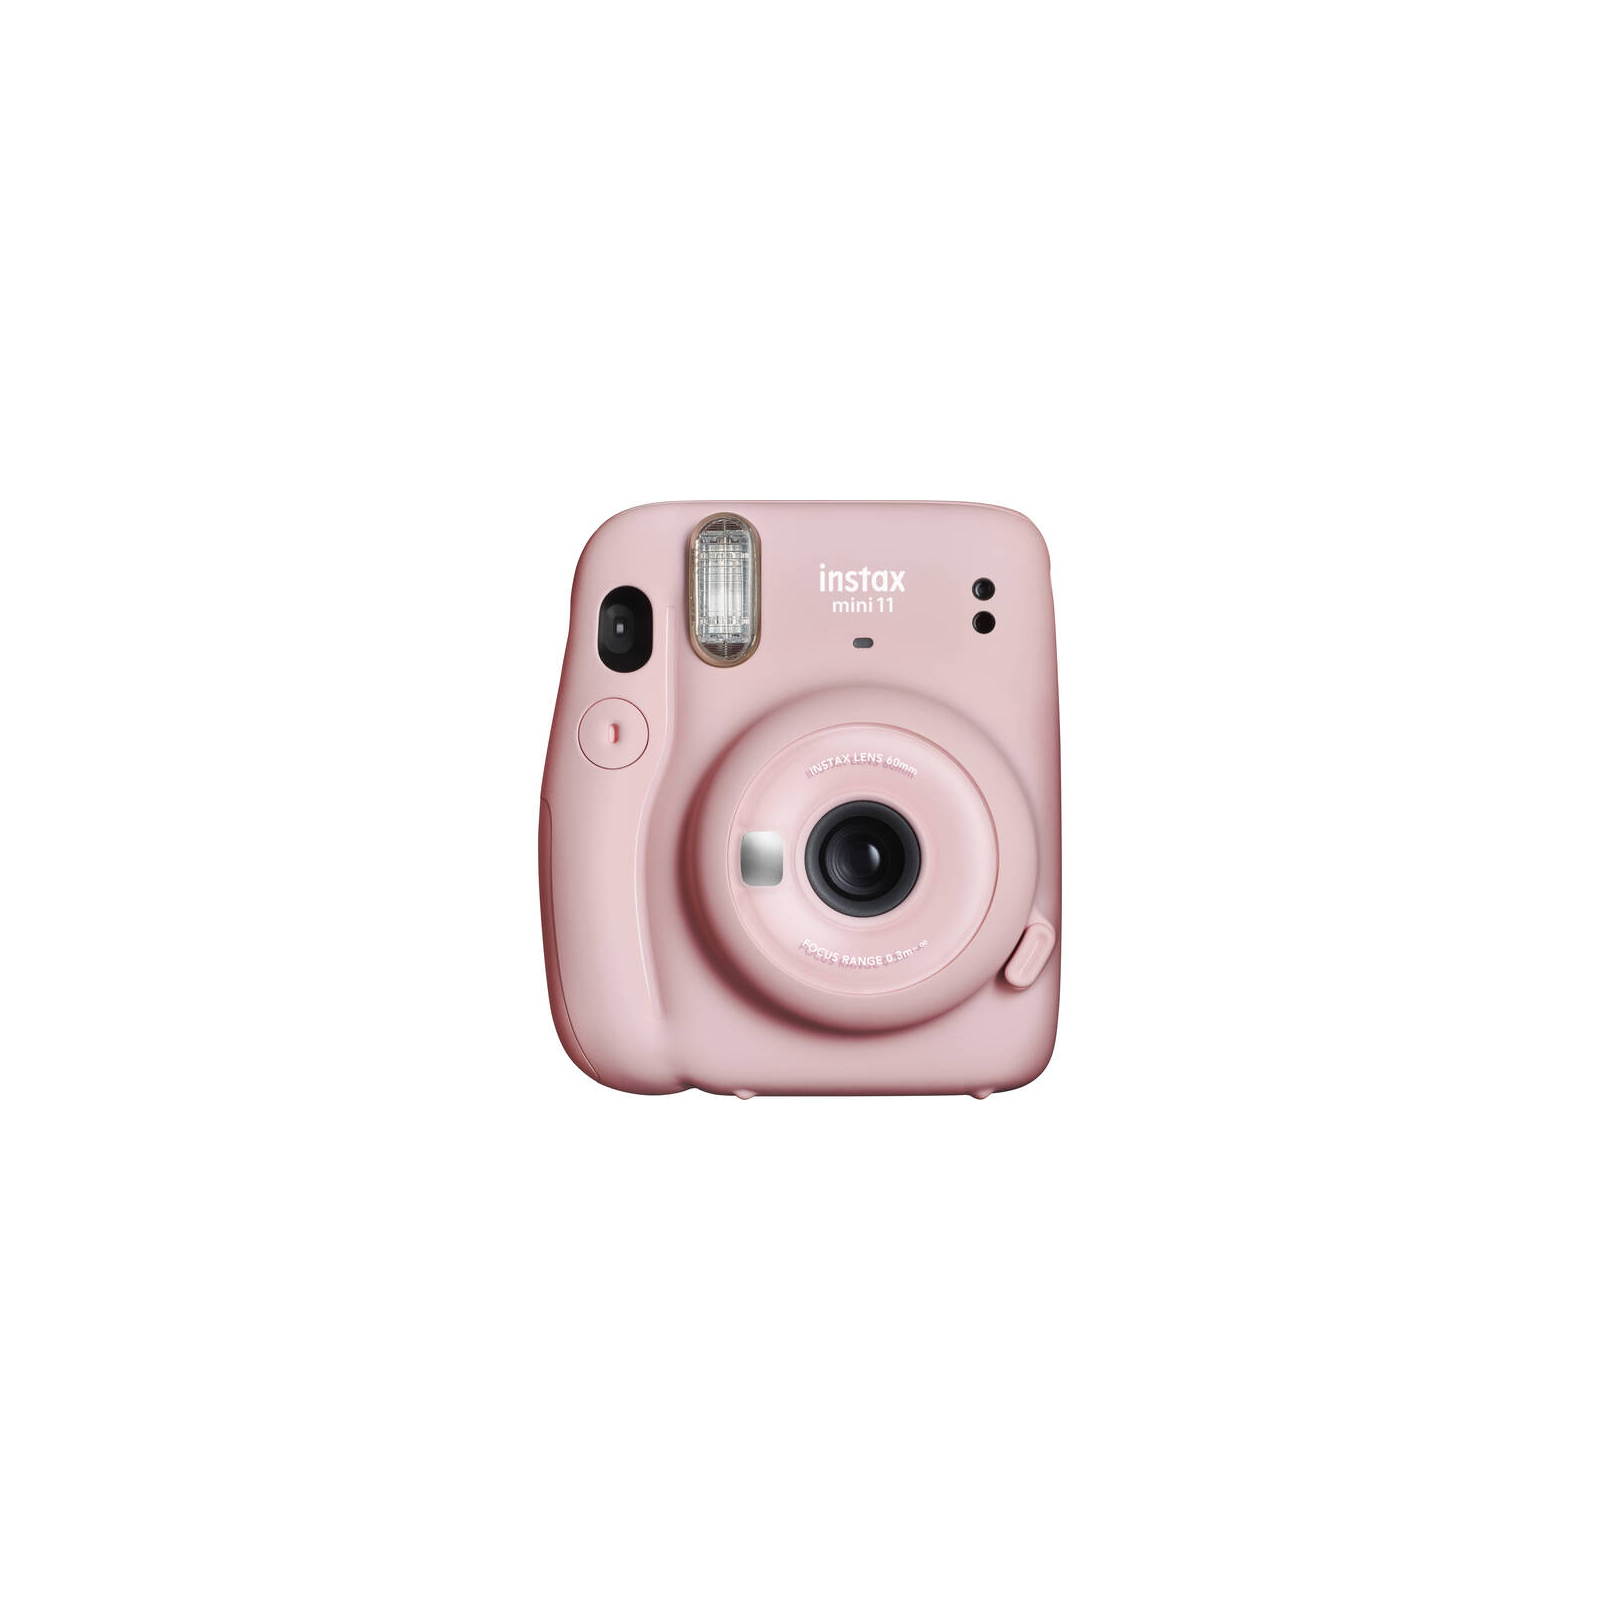 Камера моментальной печати Fujifilm INSTAX Mini 11 BLUSH PINK (16654968)